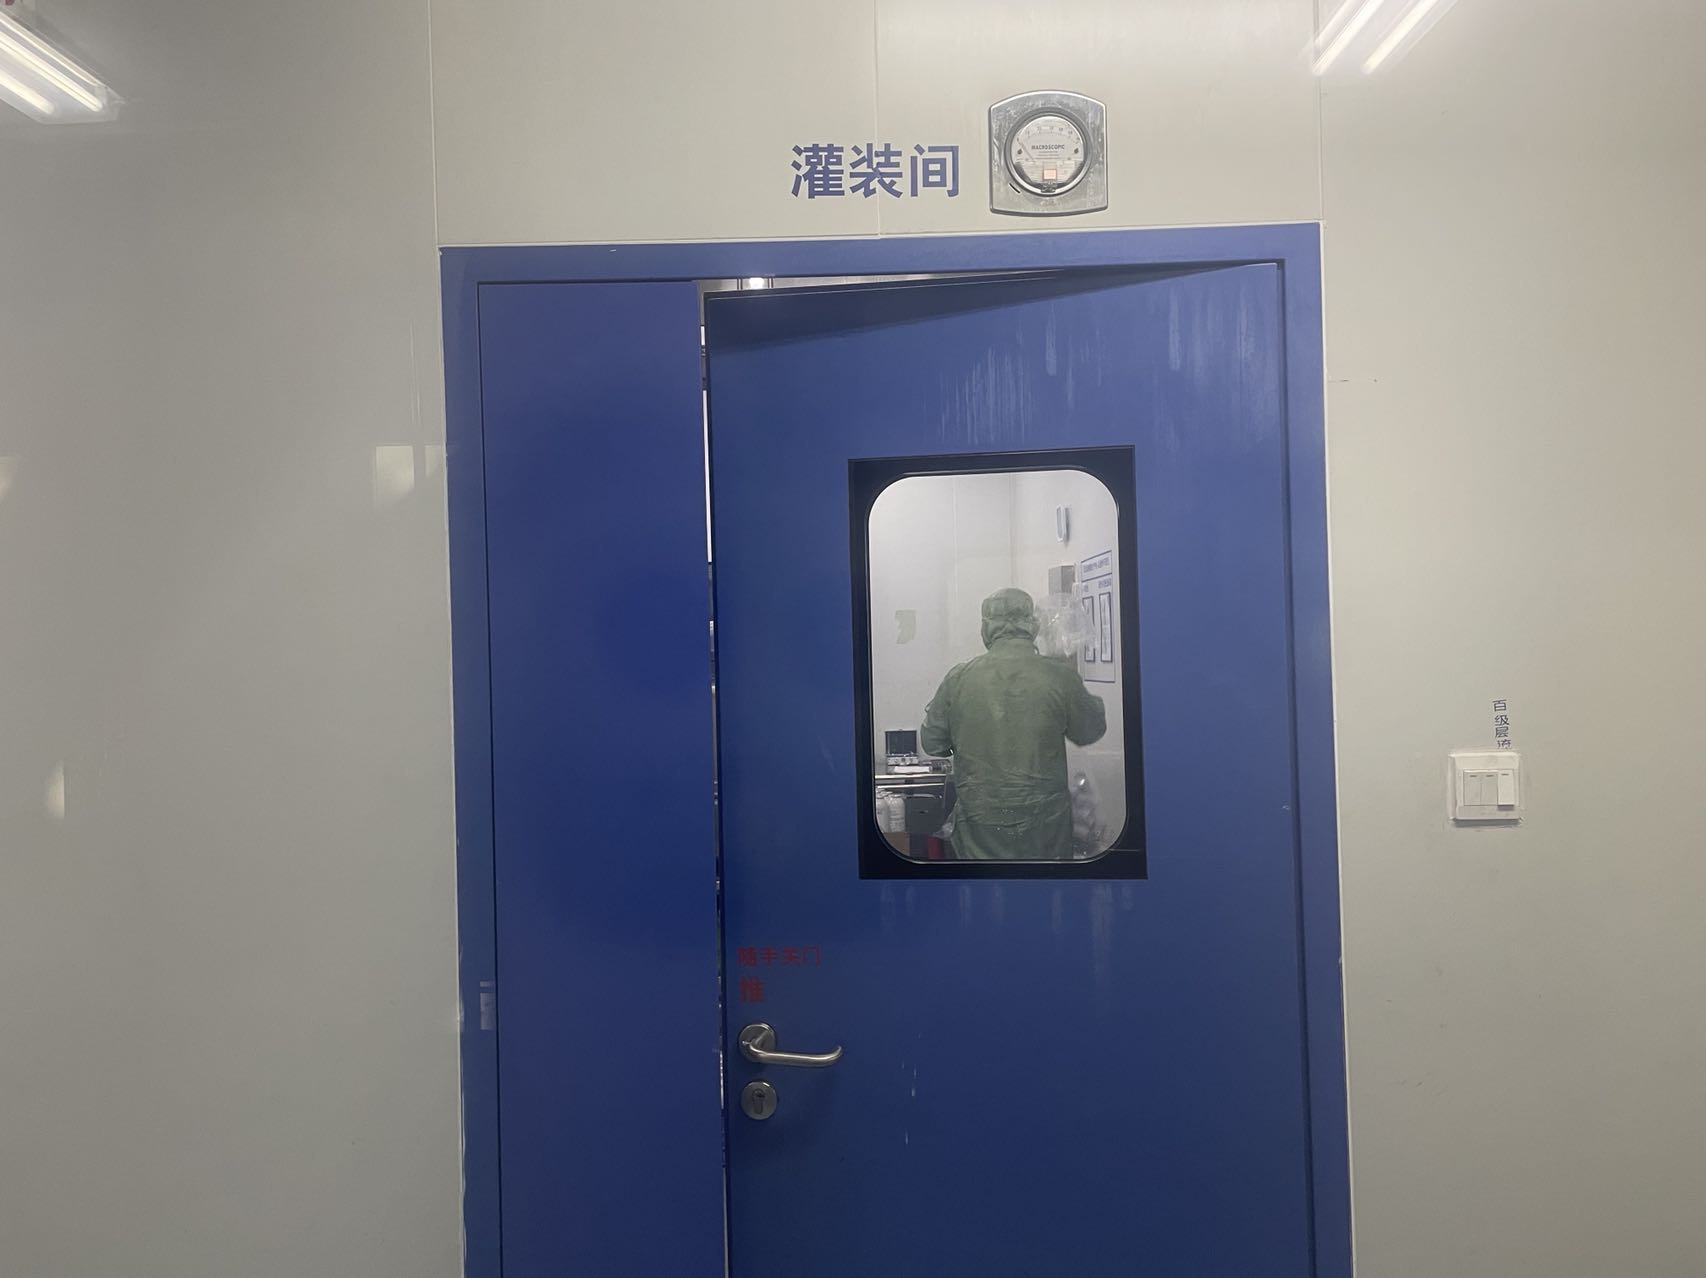 聊城阳谷县食品厂洁净区(室)检测项目--安衡检测